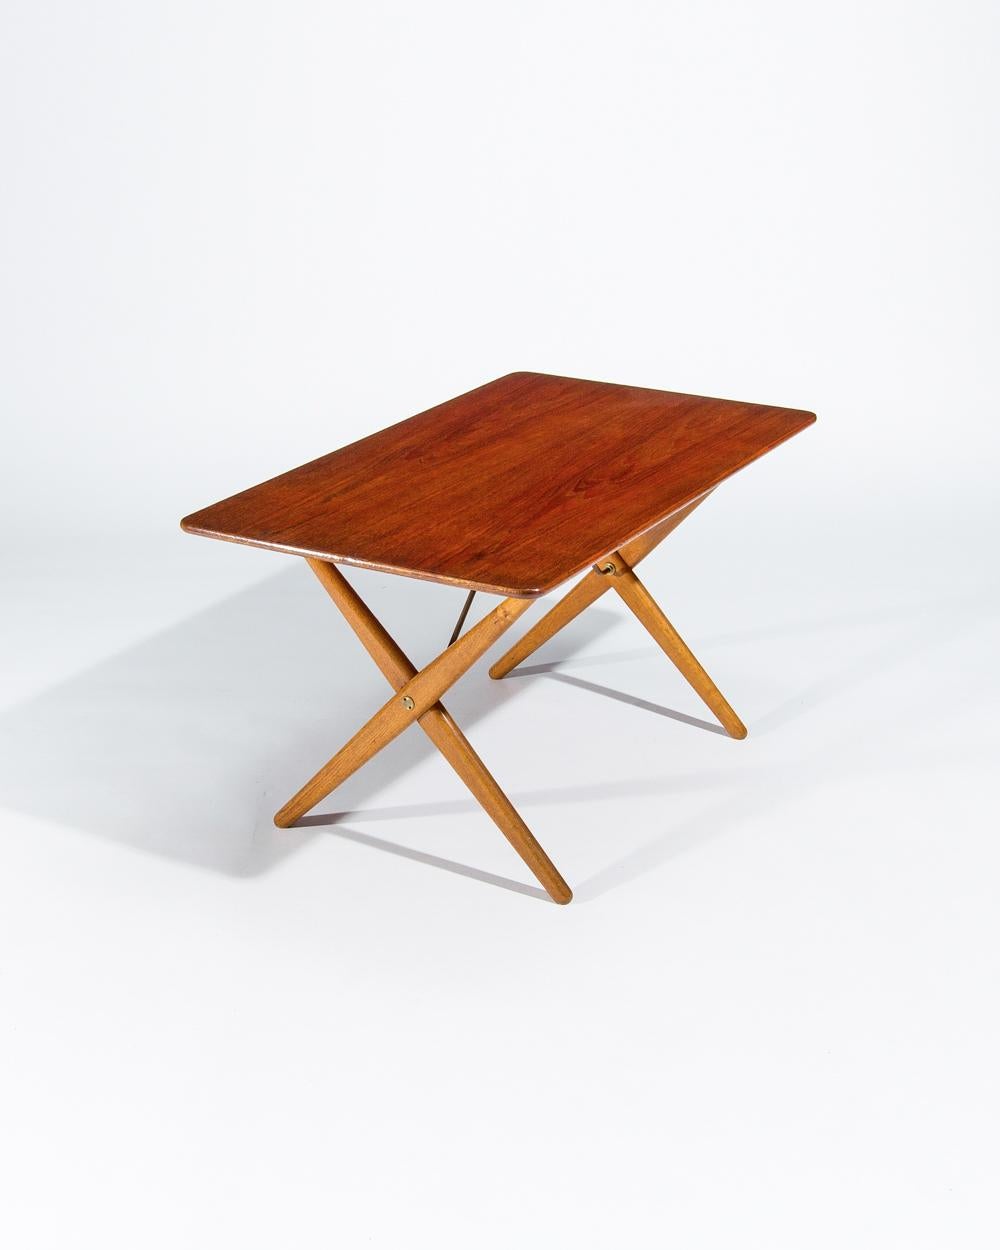 Hans Wegner Coffee Table Teak & Oak for Andreas Tuck, Danish, Midcentury 1950s For Sale 3